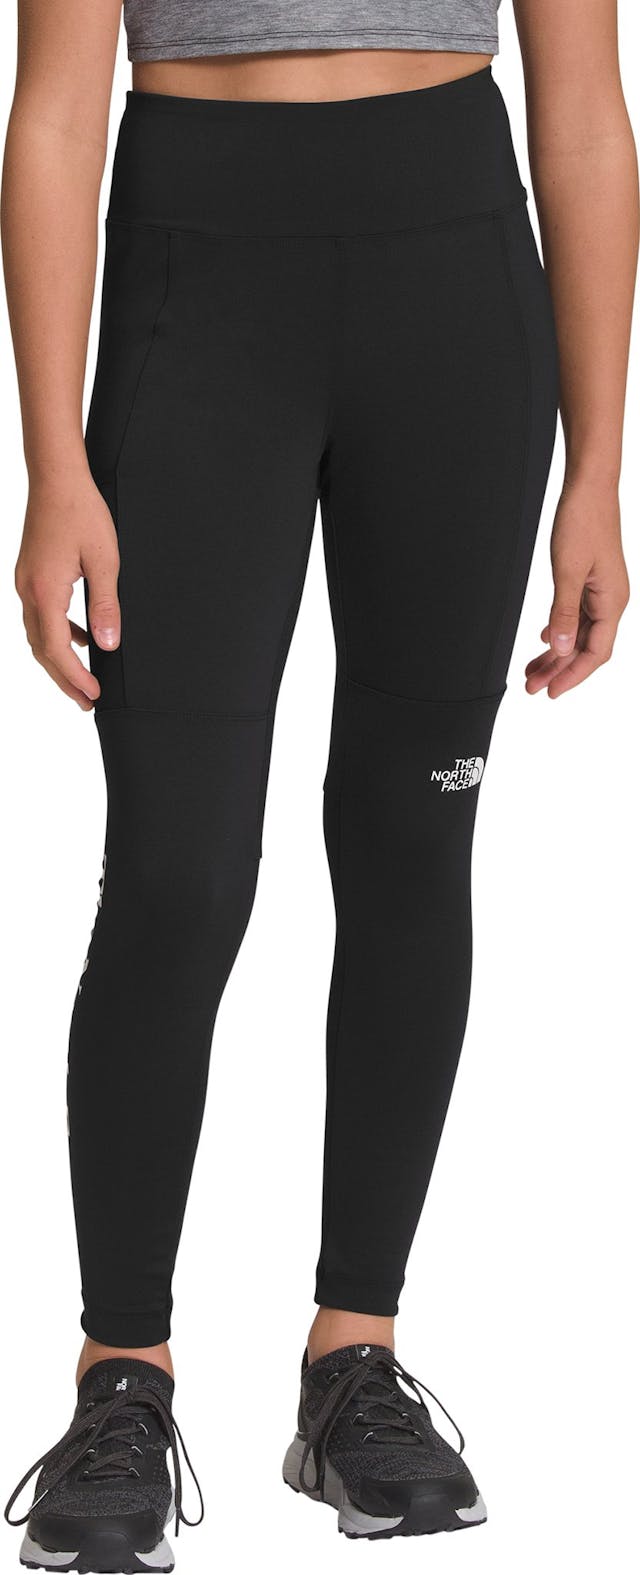 Product image for Trailwear Hybrid Legging - Girl's